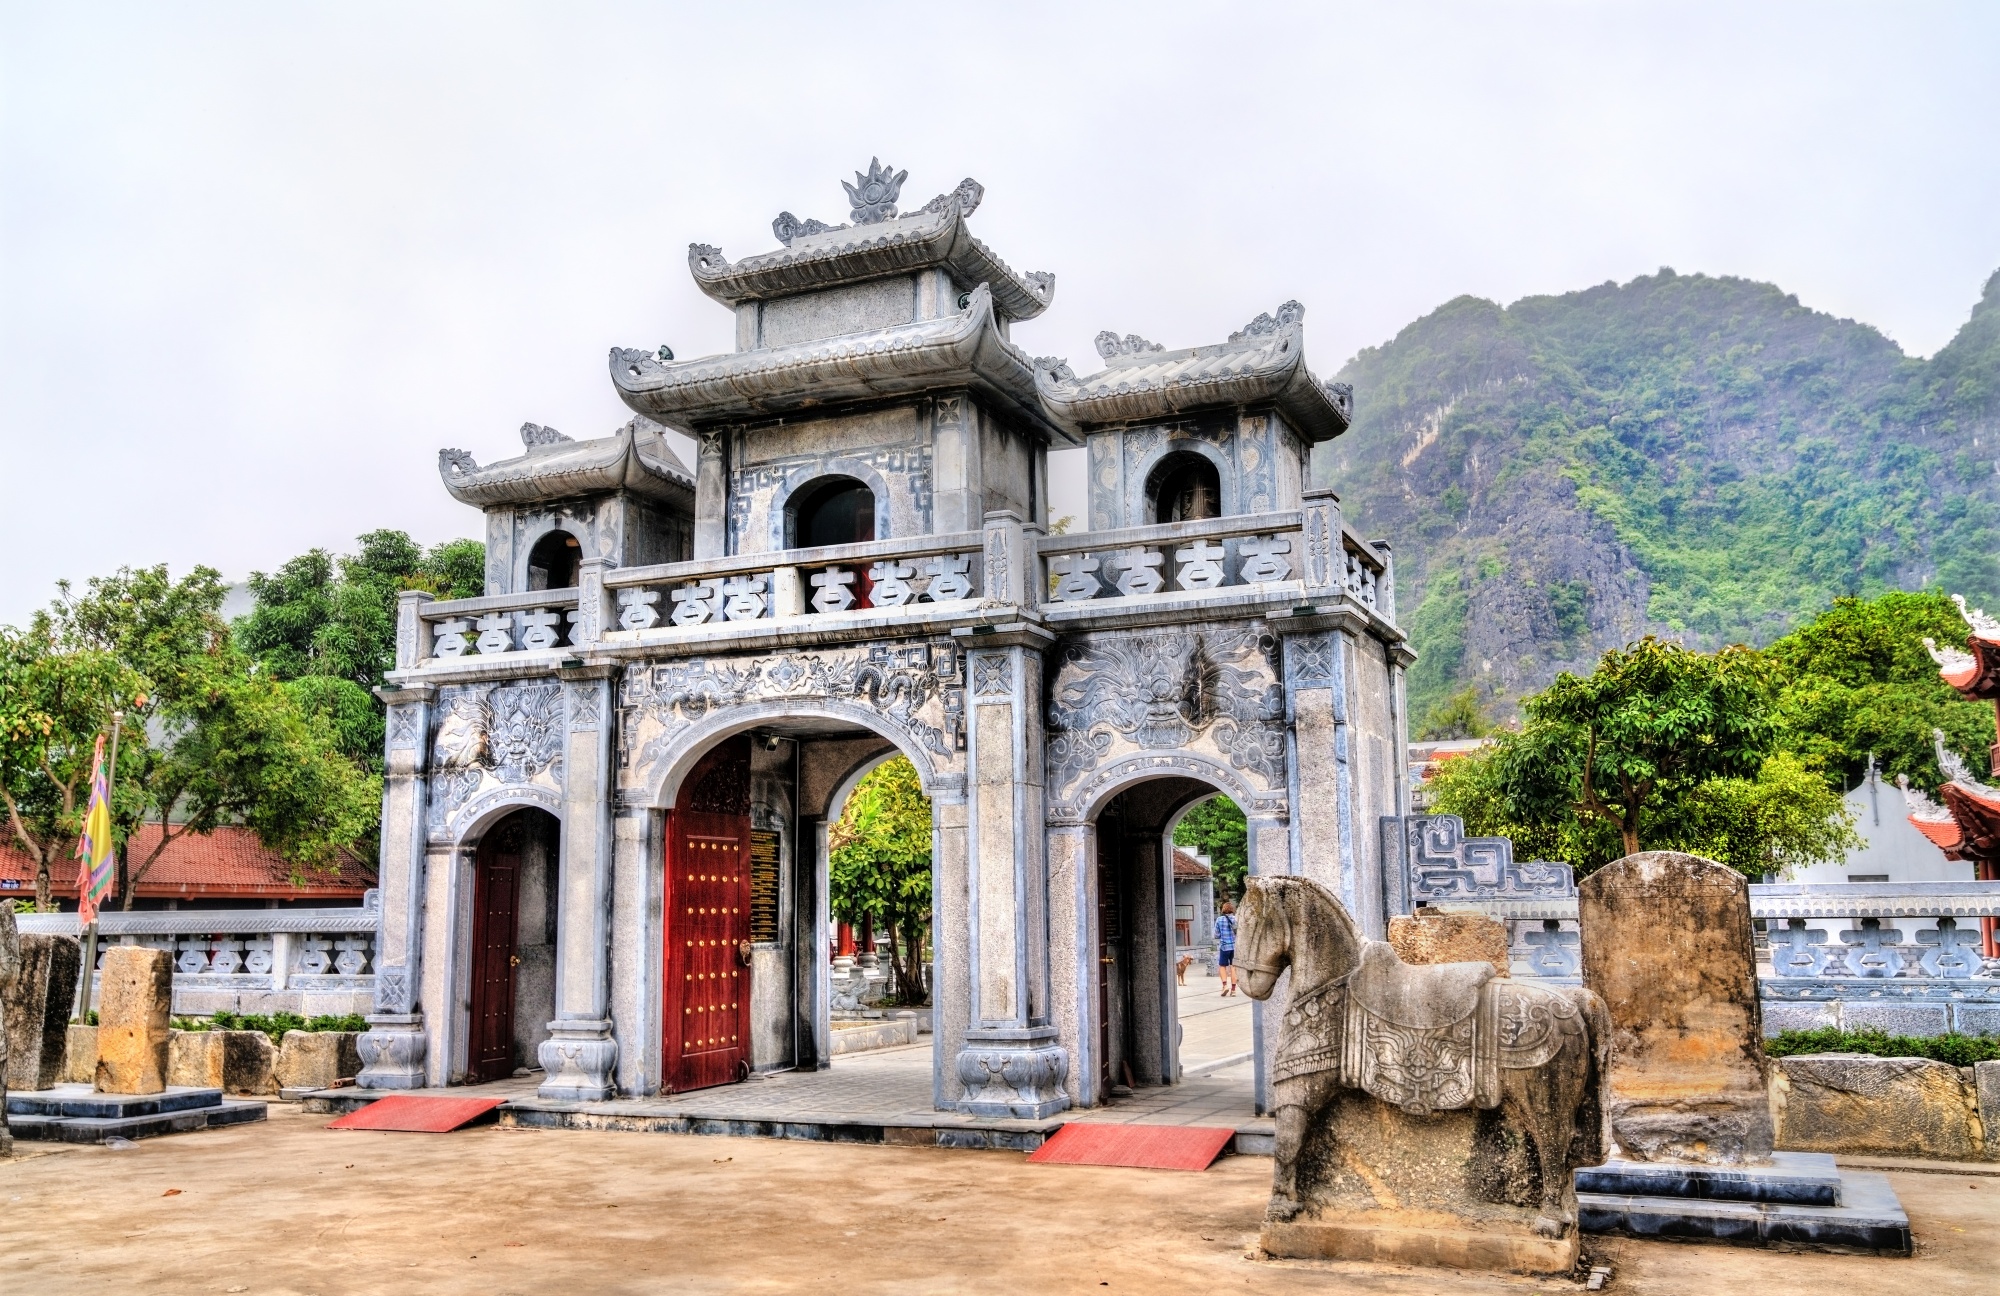 ハノイ南に位置する陳朝の皇帝を奉る「タイ・ヴィー寺院」。石碑や彫像など陳朝時代の史跡が多く残っている。五大門には中国語で文字が彫られていることが特徴的。